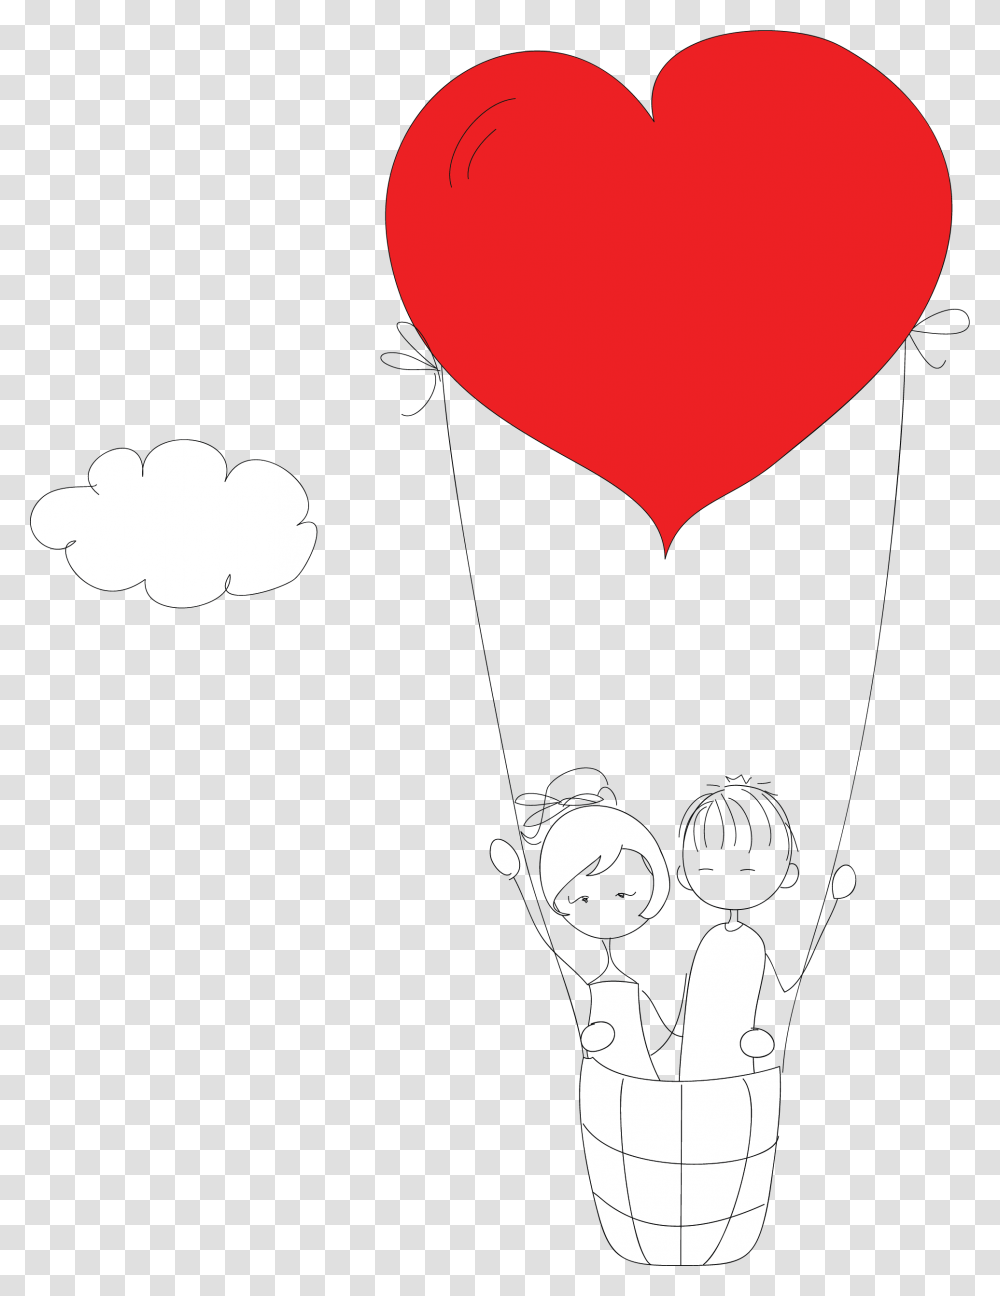 Heart, Ball, Balloon, Hot Air Balloon, Aircraft Transparent Png